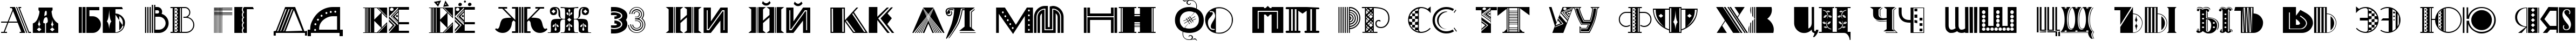 Пример написания русского алфавита шрифтом Art-Decoretta